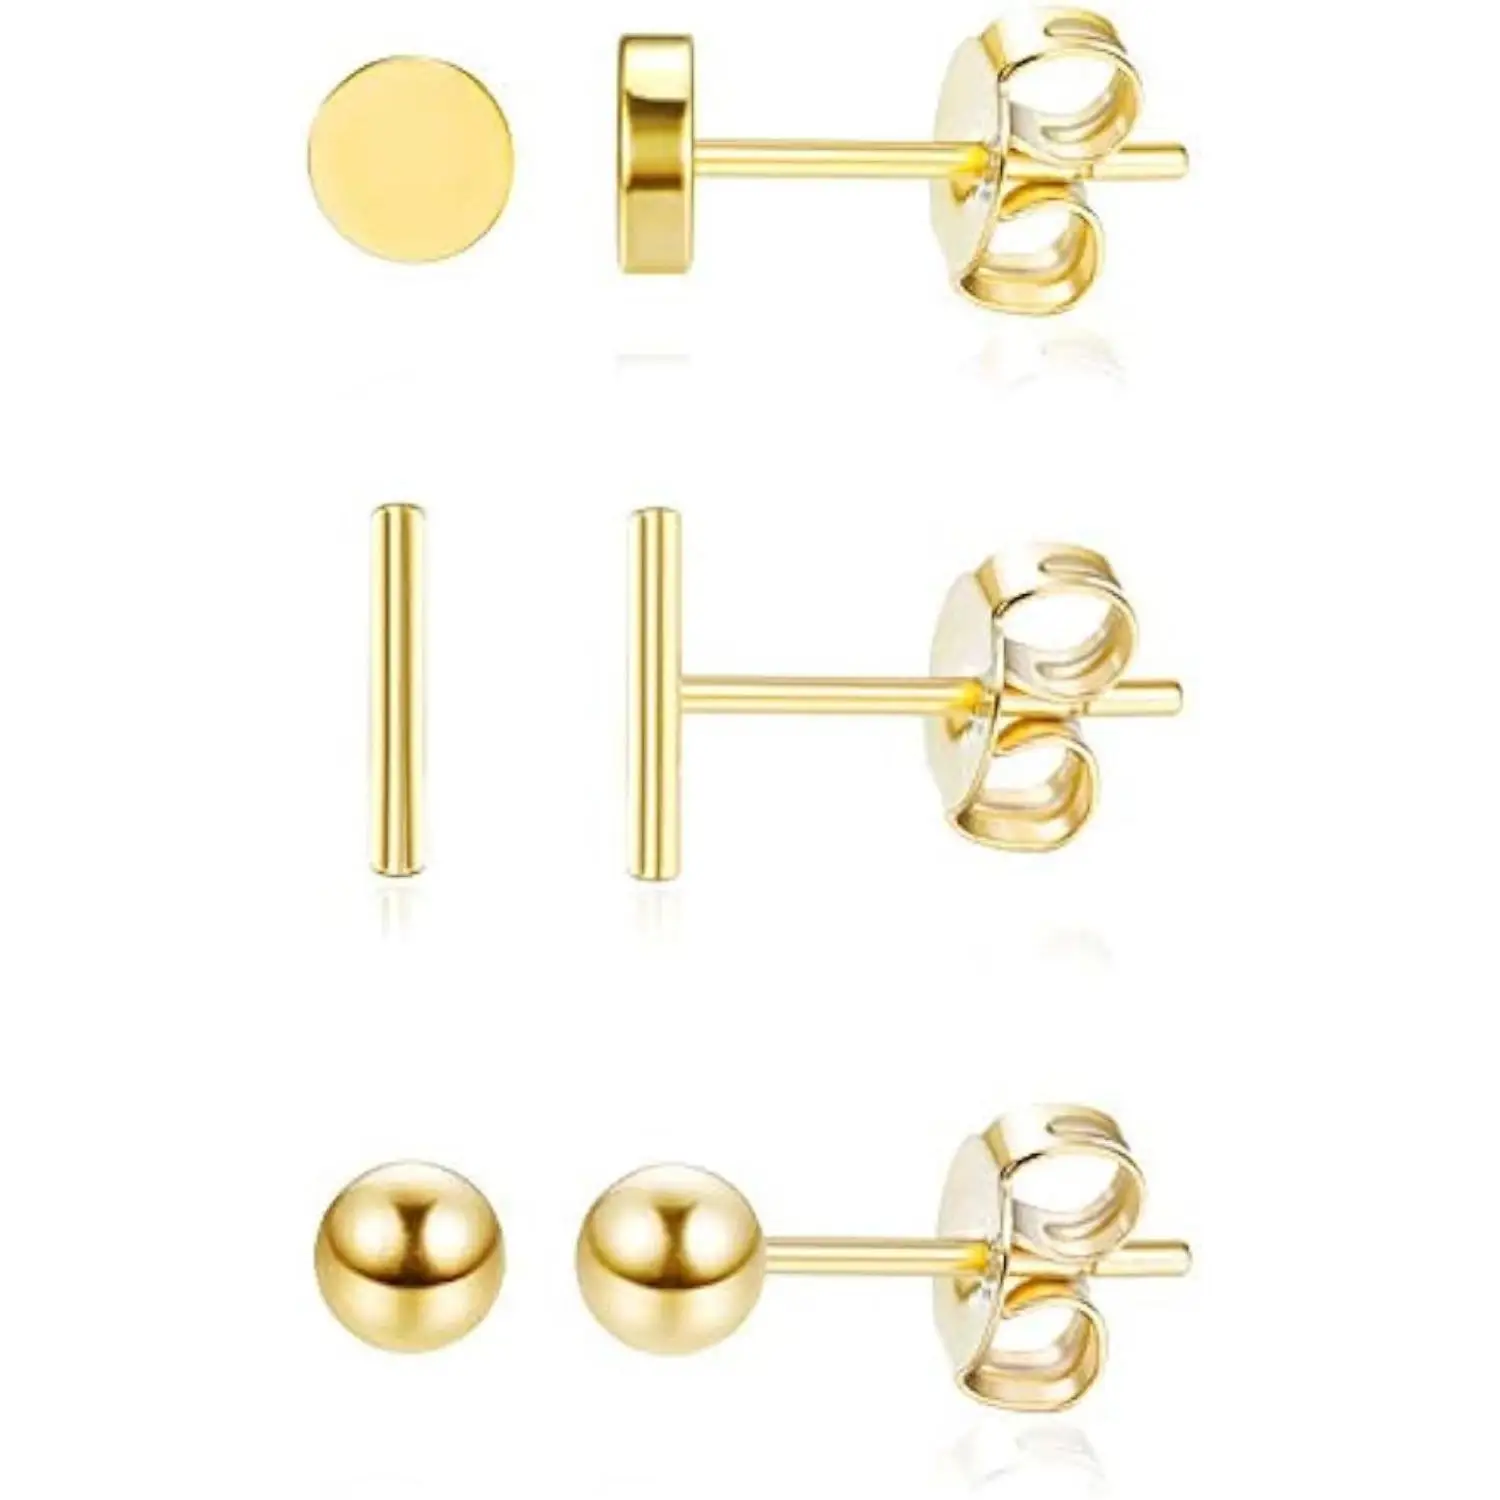 

Fansilver 3Pairs Sterling Silver Stud Earrings 18K Gold Plated Bar Ball Earrings Hypoallergenic Sutd Earrings for Women Girls